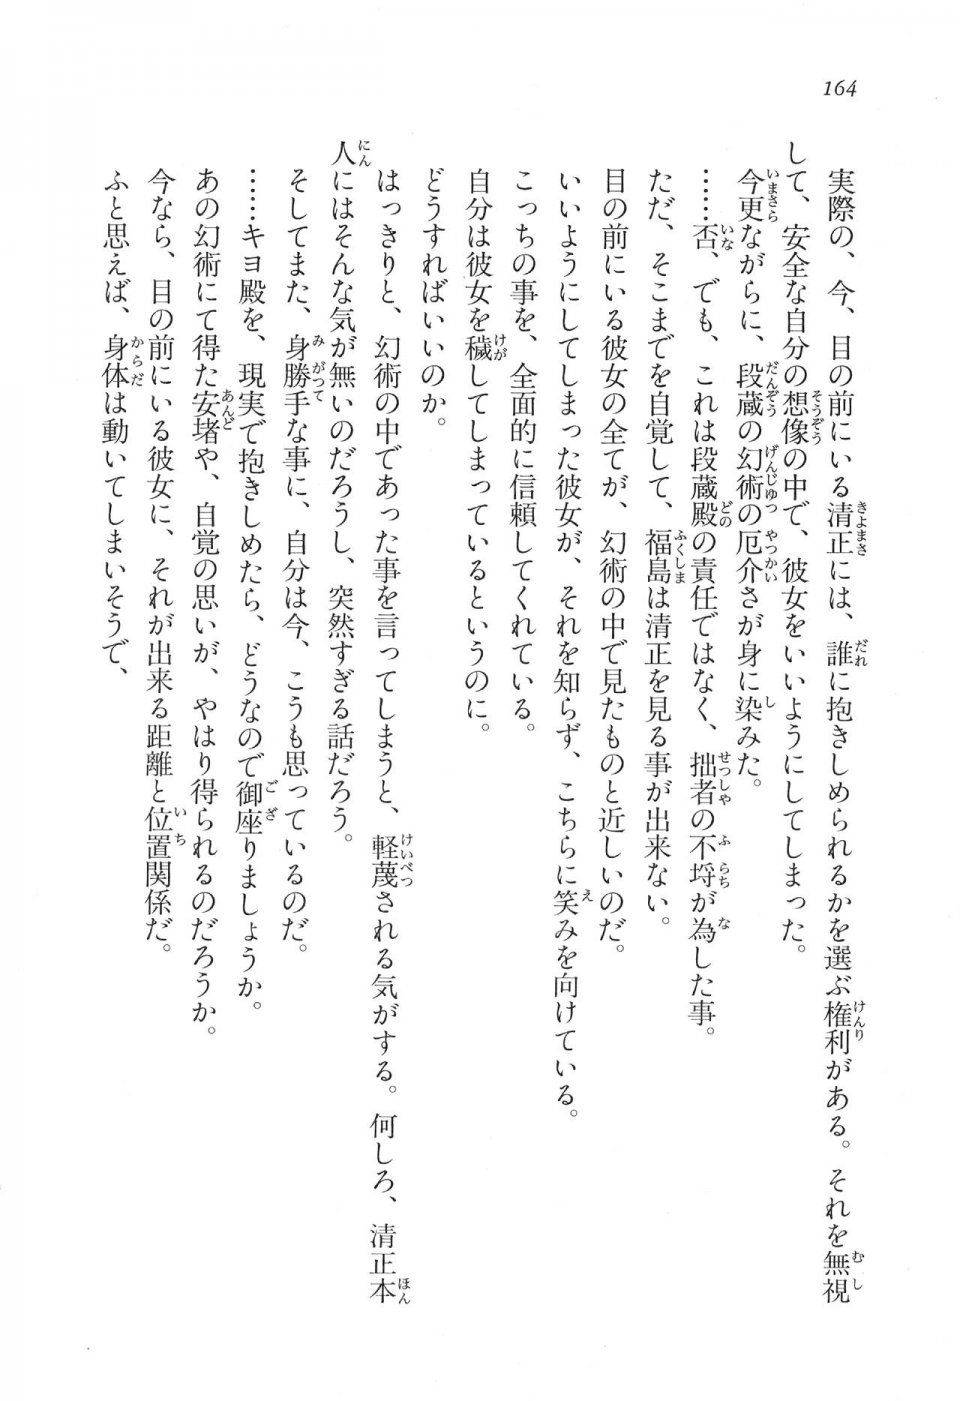 Kyoukai Senjou no Horizon LN Vol 16(7A) - Photo #164